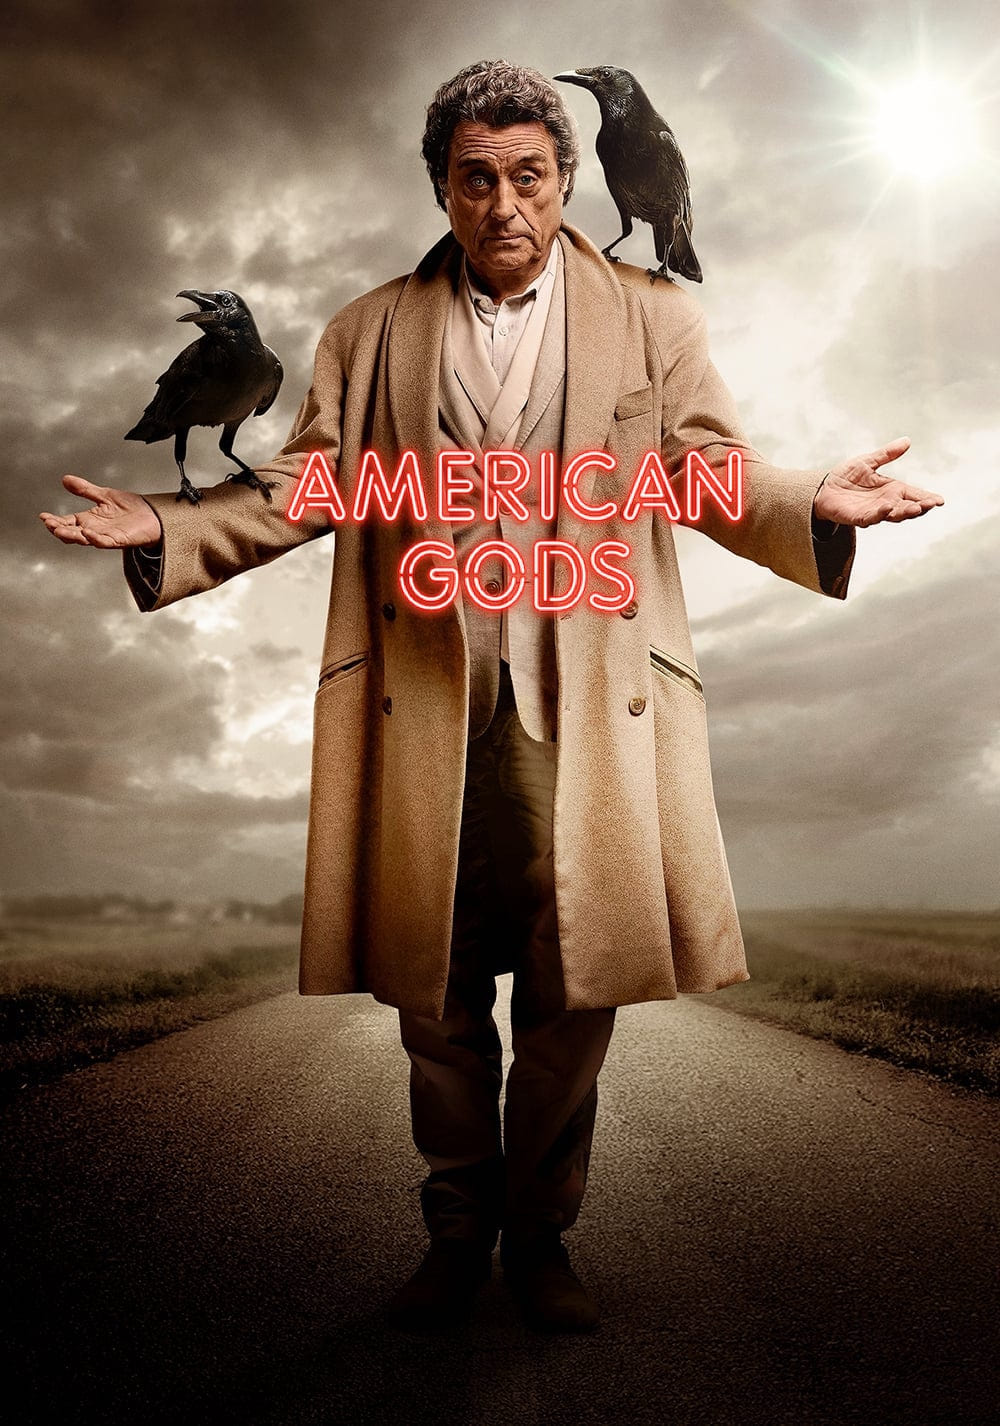 Plakát pro film “Američtí bohové”